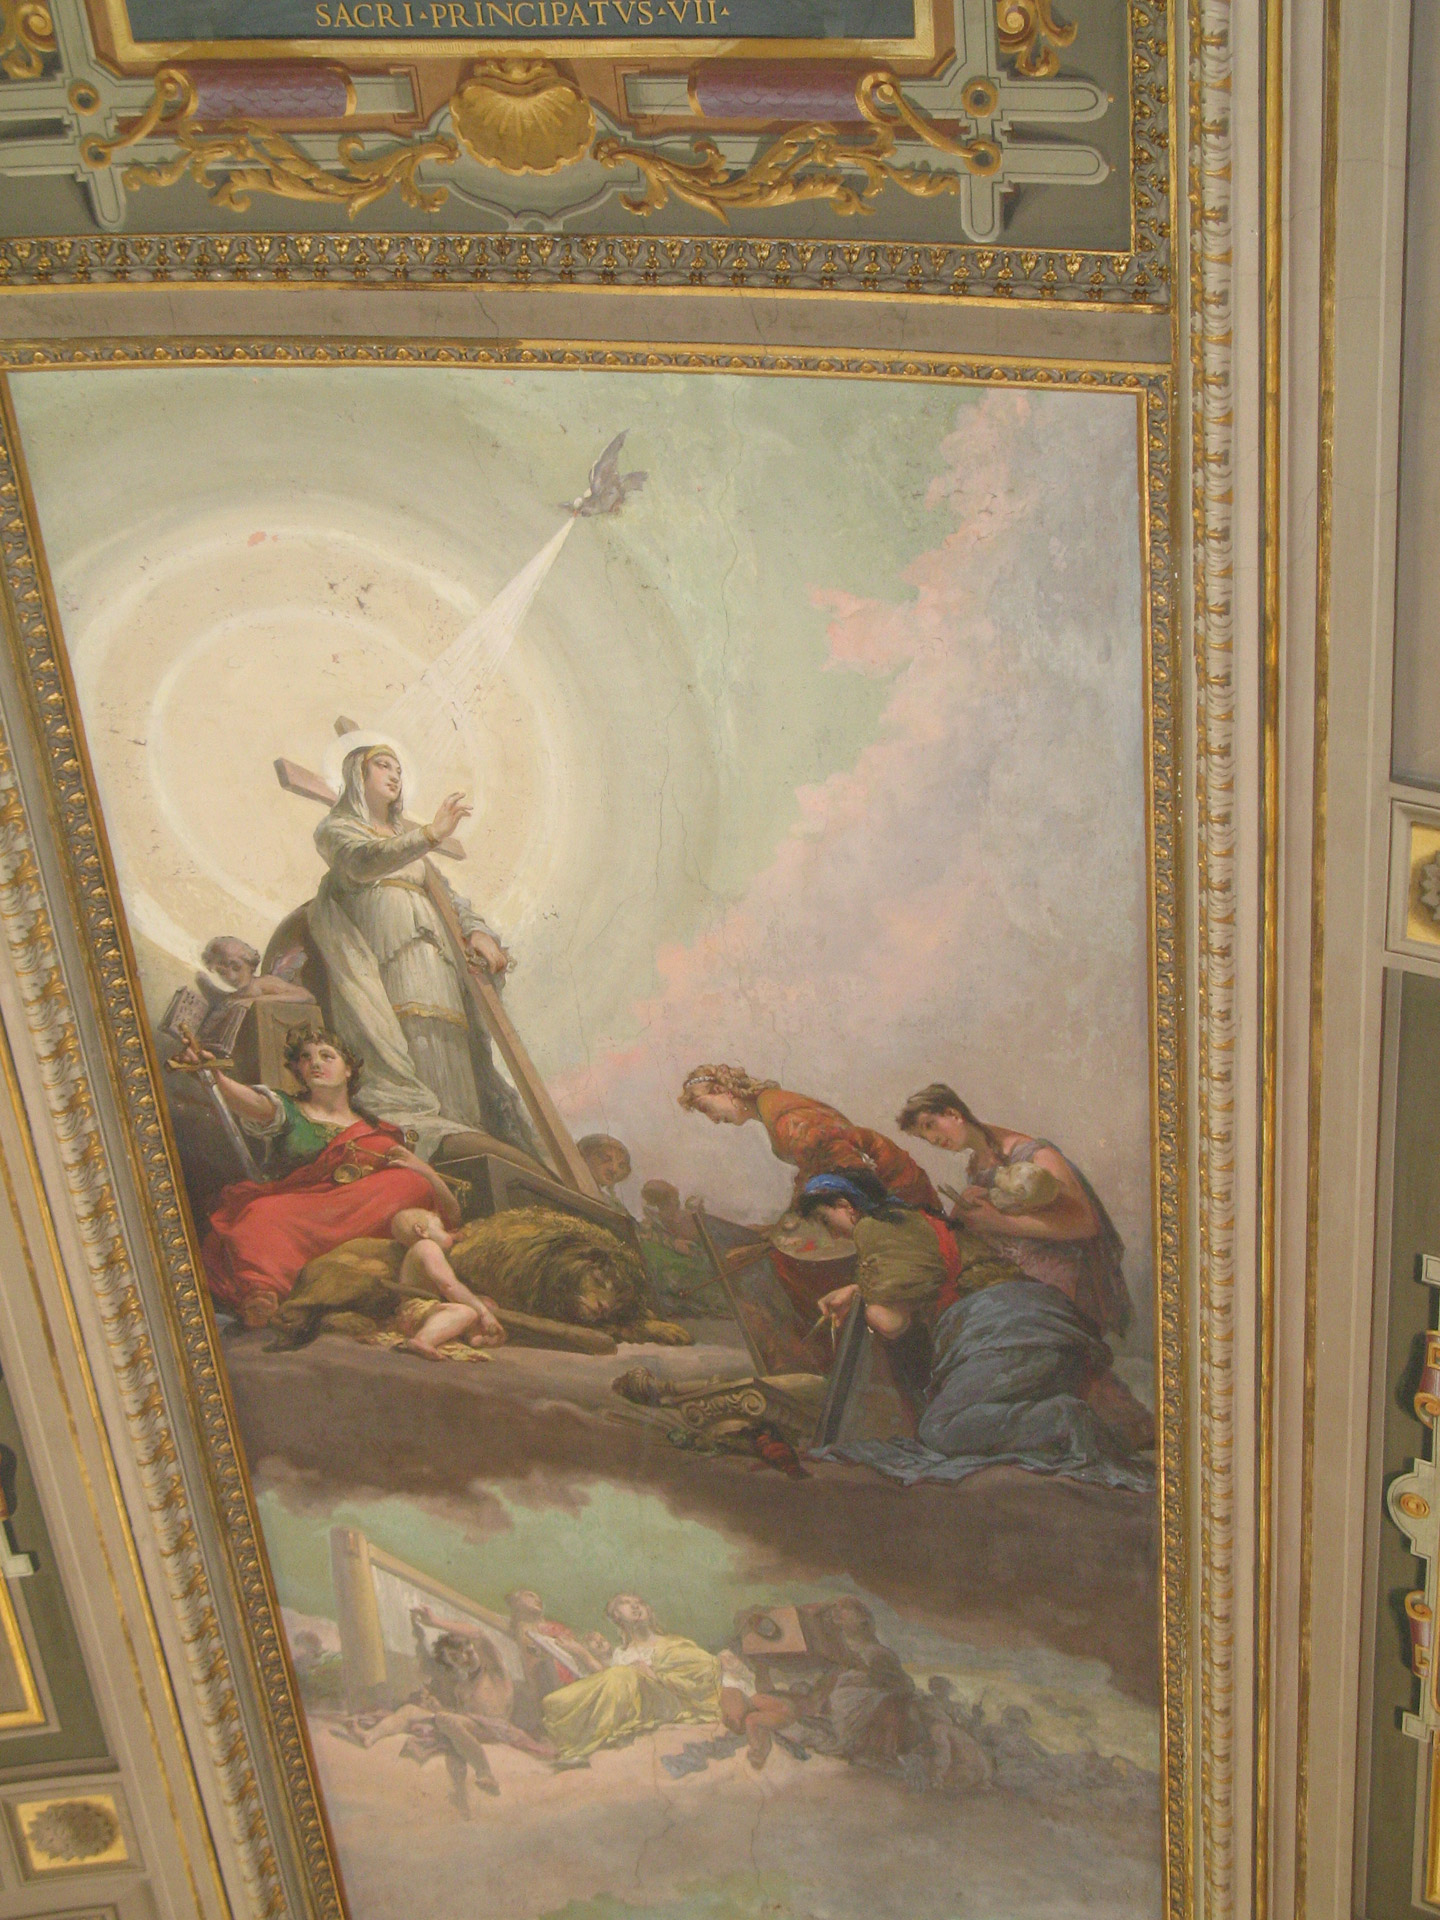 Vatican Ceiling Paintings Vatican Ceiling Paintings Free